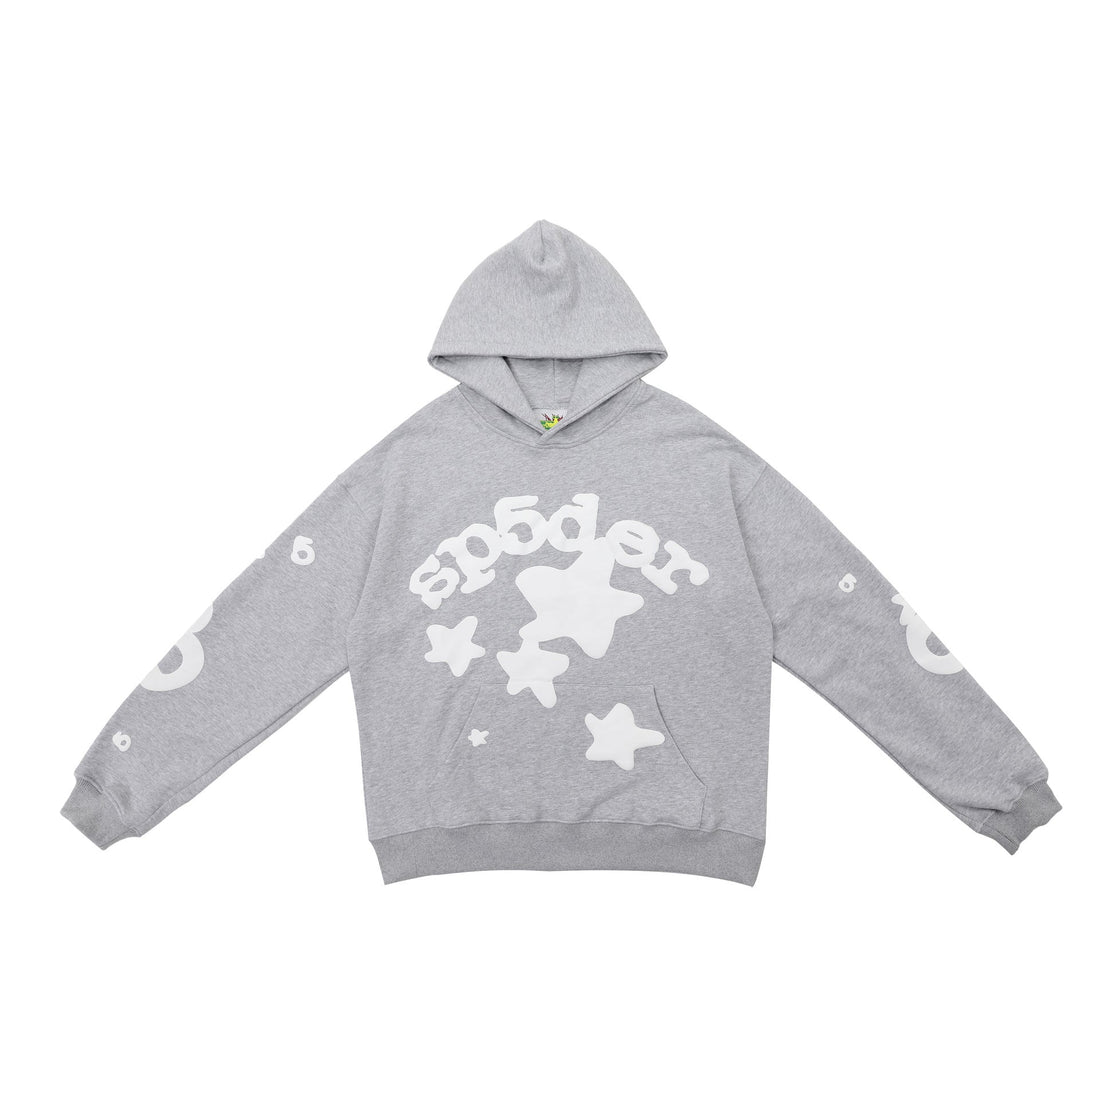 Classic Grey Sp5der Hoodie - Trendy Star Print Hooded Sweatshirt - Seakoff